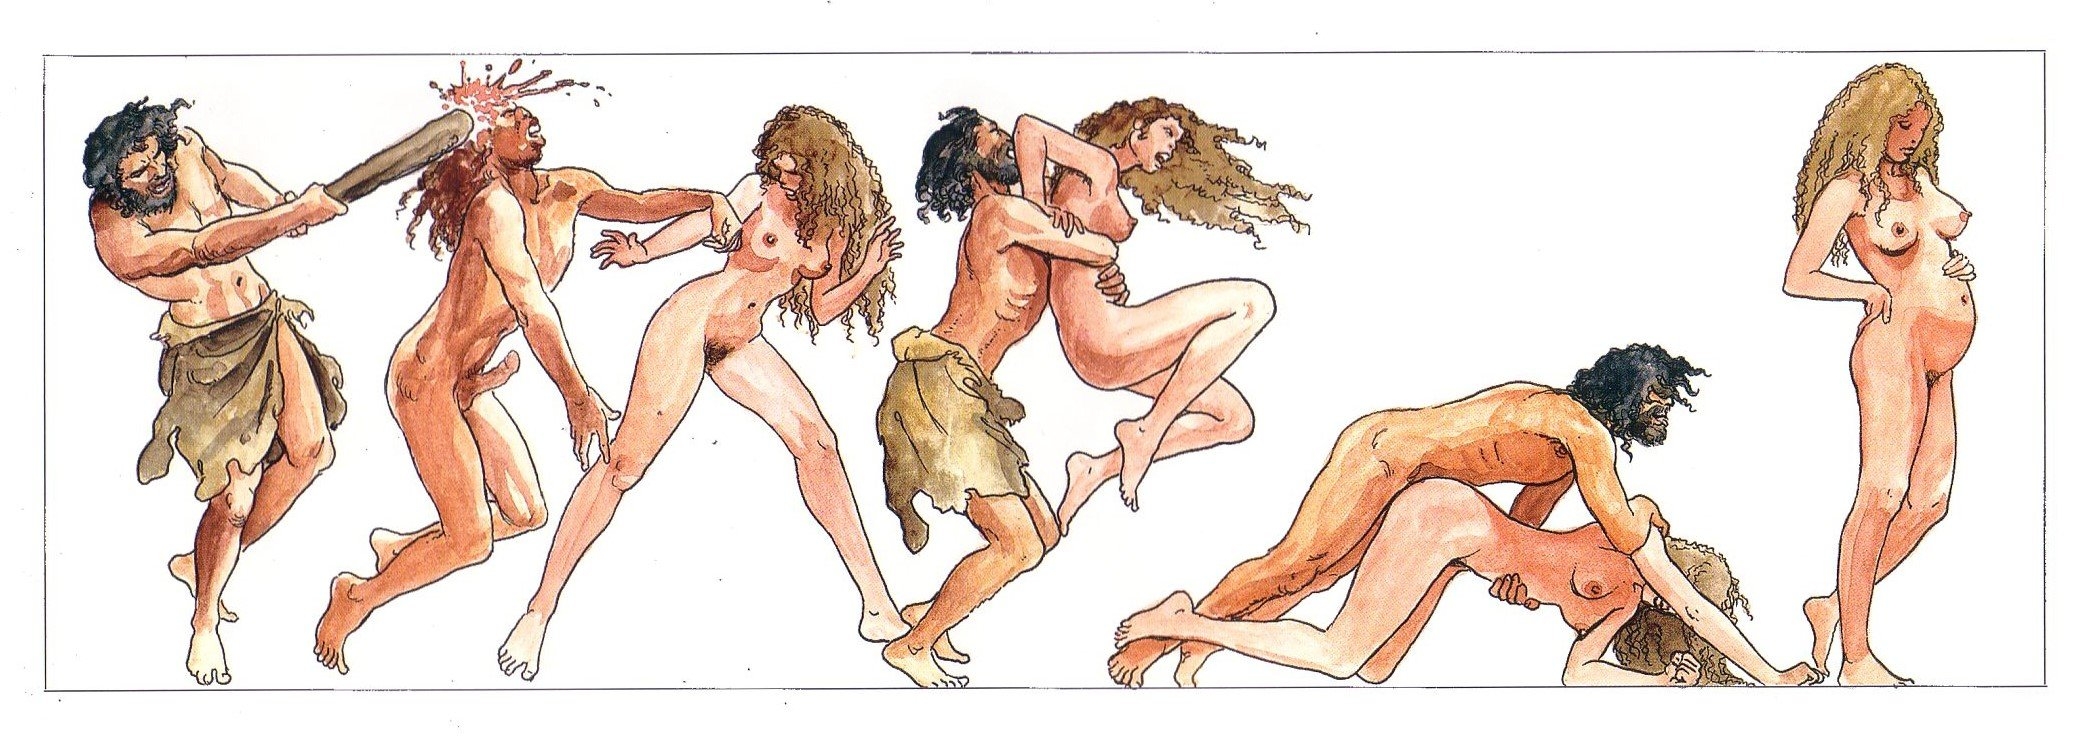 Порно видео секс в древние времена